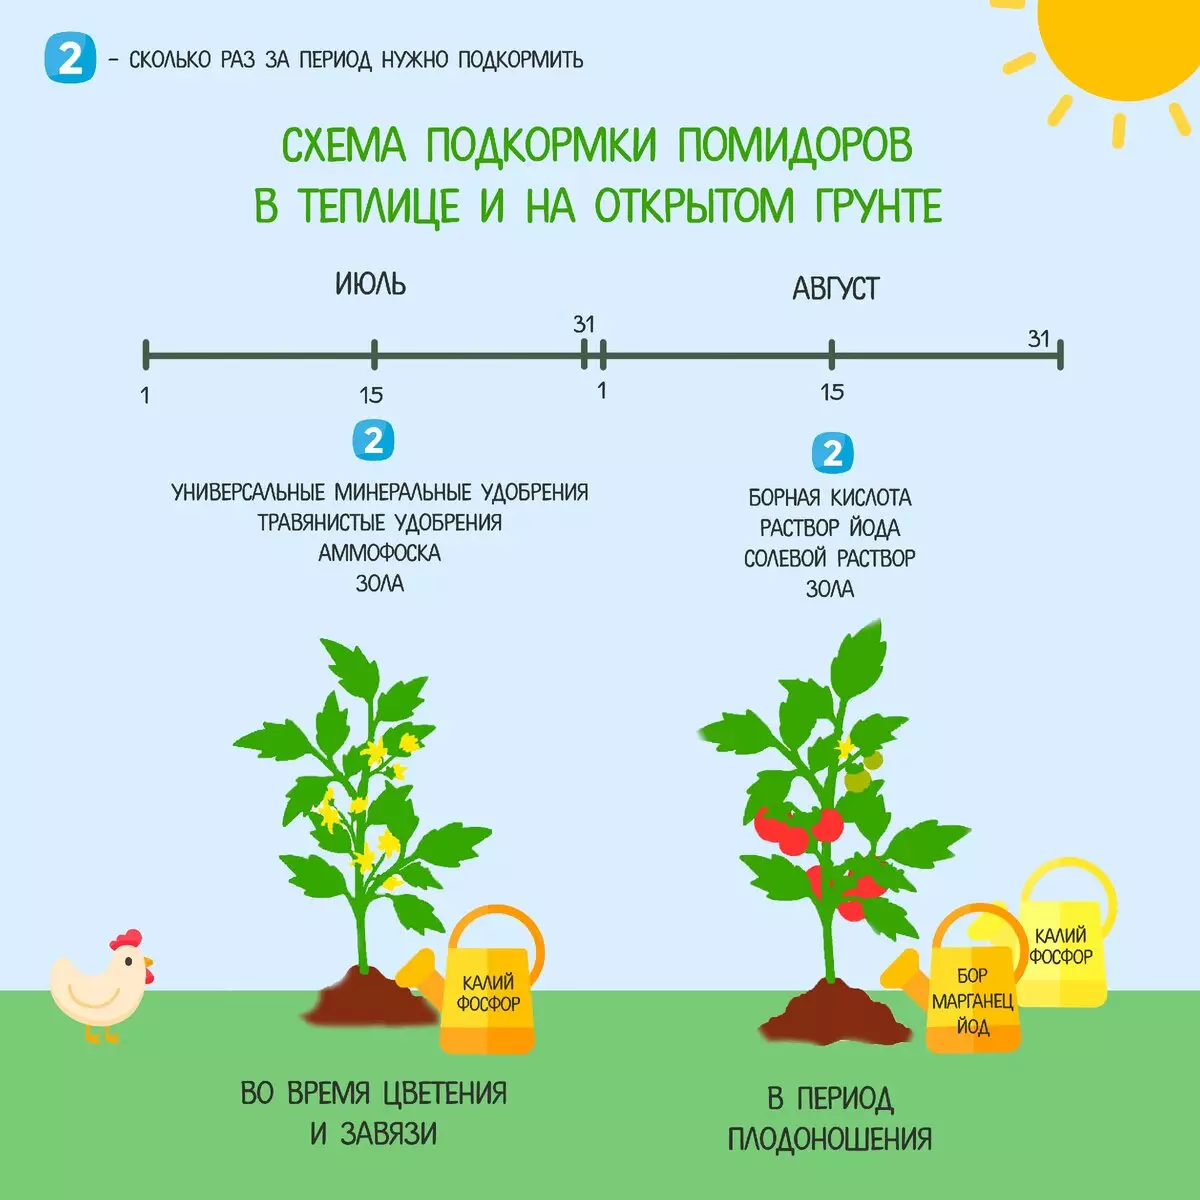 Выращивание сои: урожайность и как вырастить на бизнес - технология возделывания, как сидерат в россии, особенности на огороде